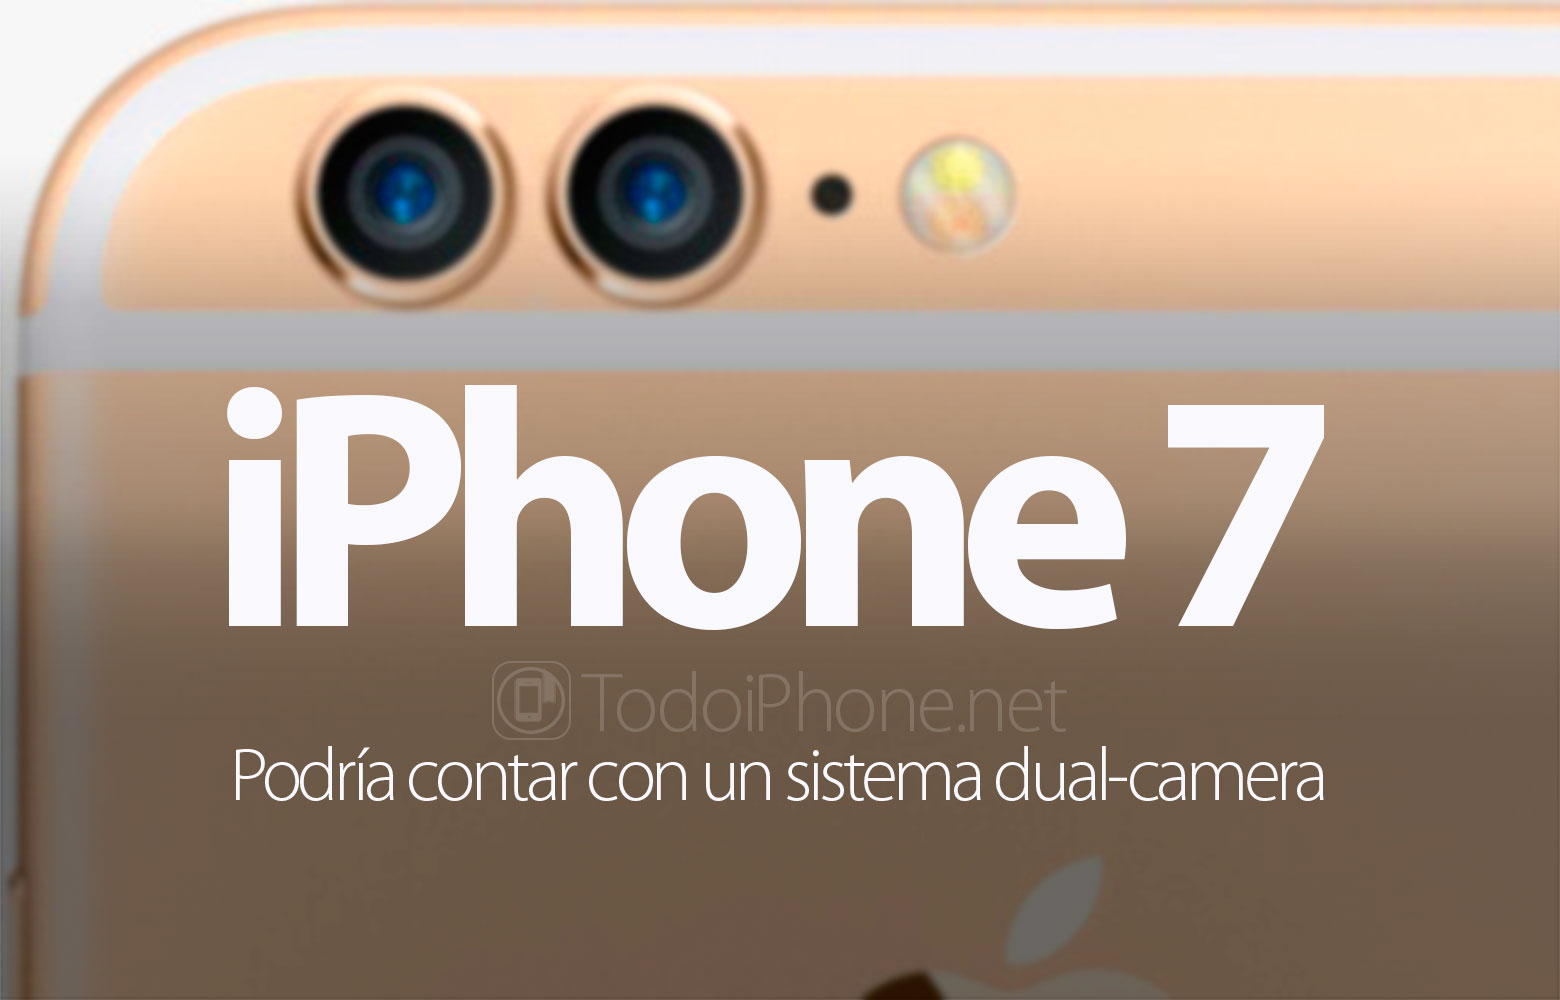 iphone-7-rumor-dual-camera